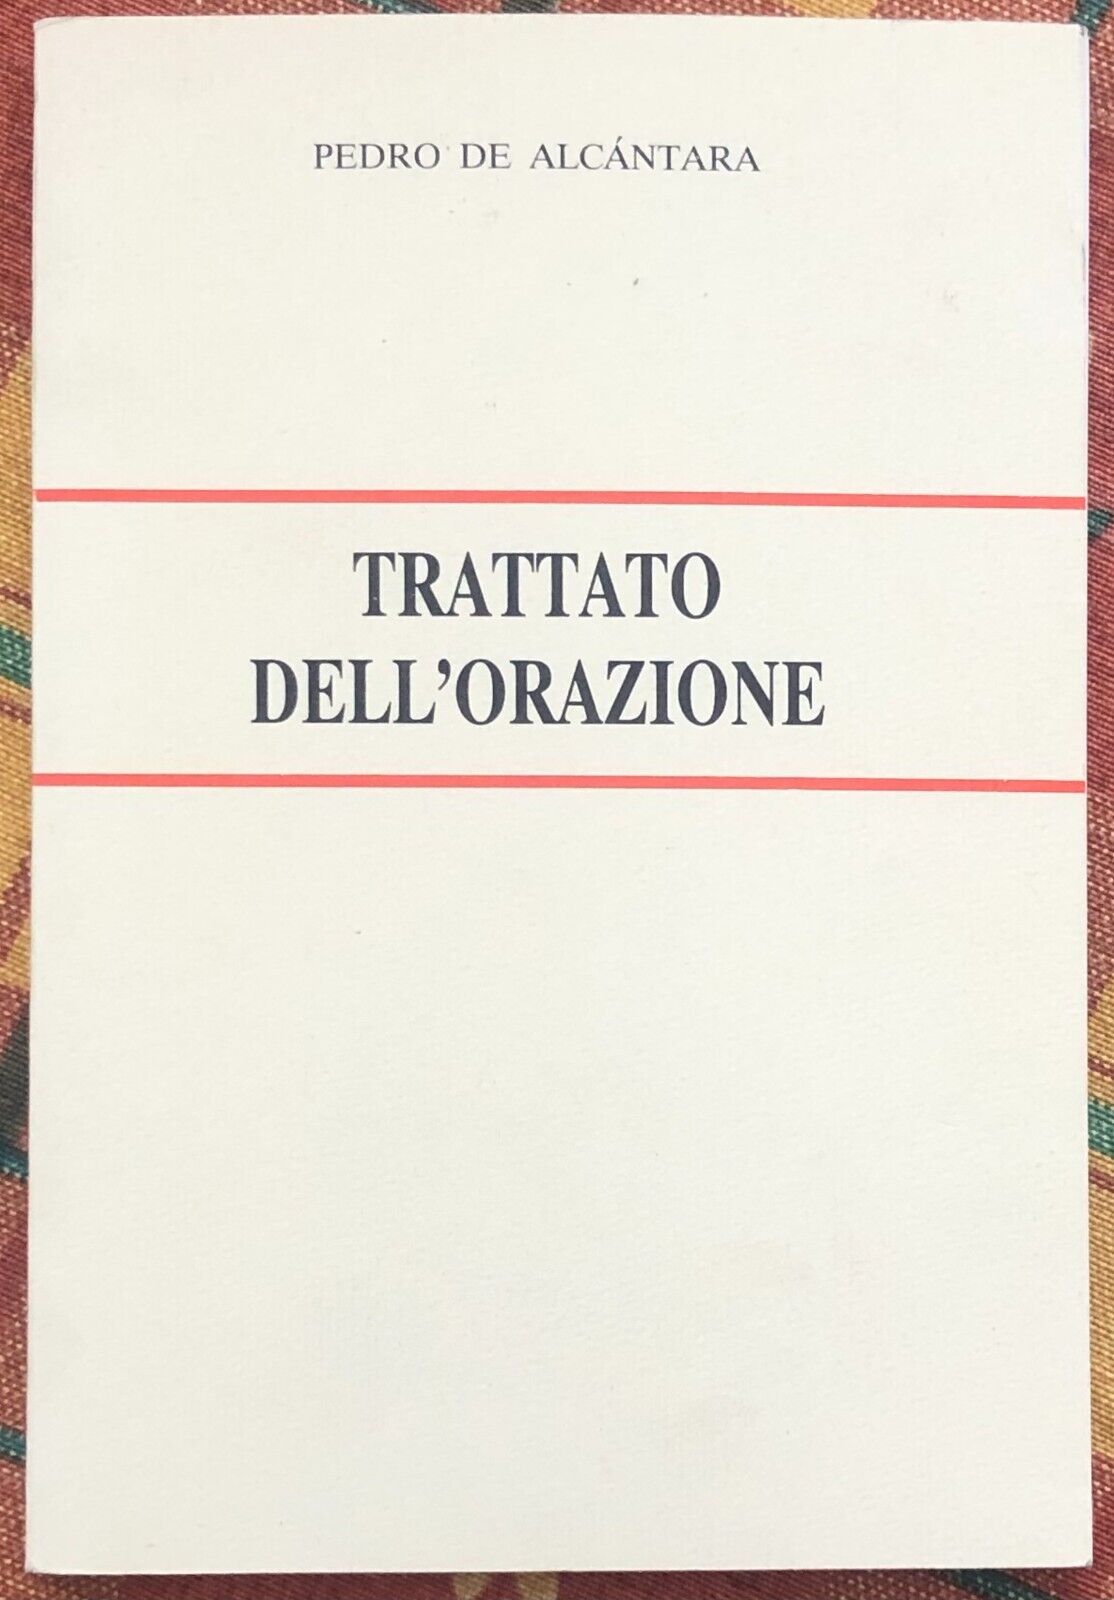  Trattato delL'orazione di Pedro De Alc?ntara, 1989, Tipolitografia Porziunco